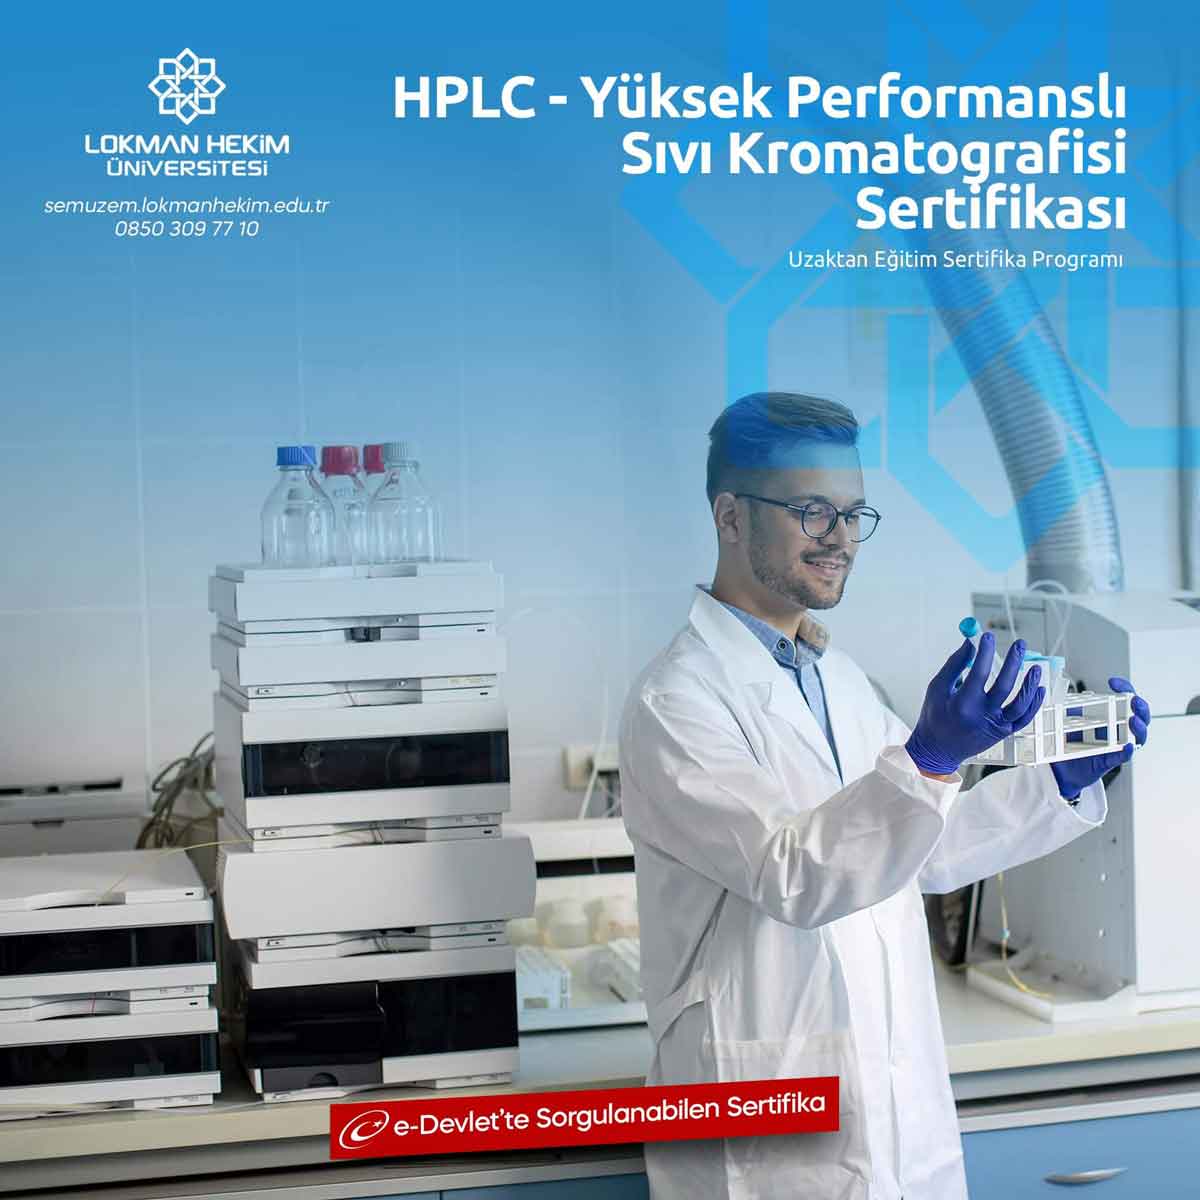 HPLC - Yüksek Performanslı Sıvı Kromatografisi Sertifikası